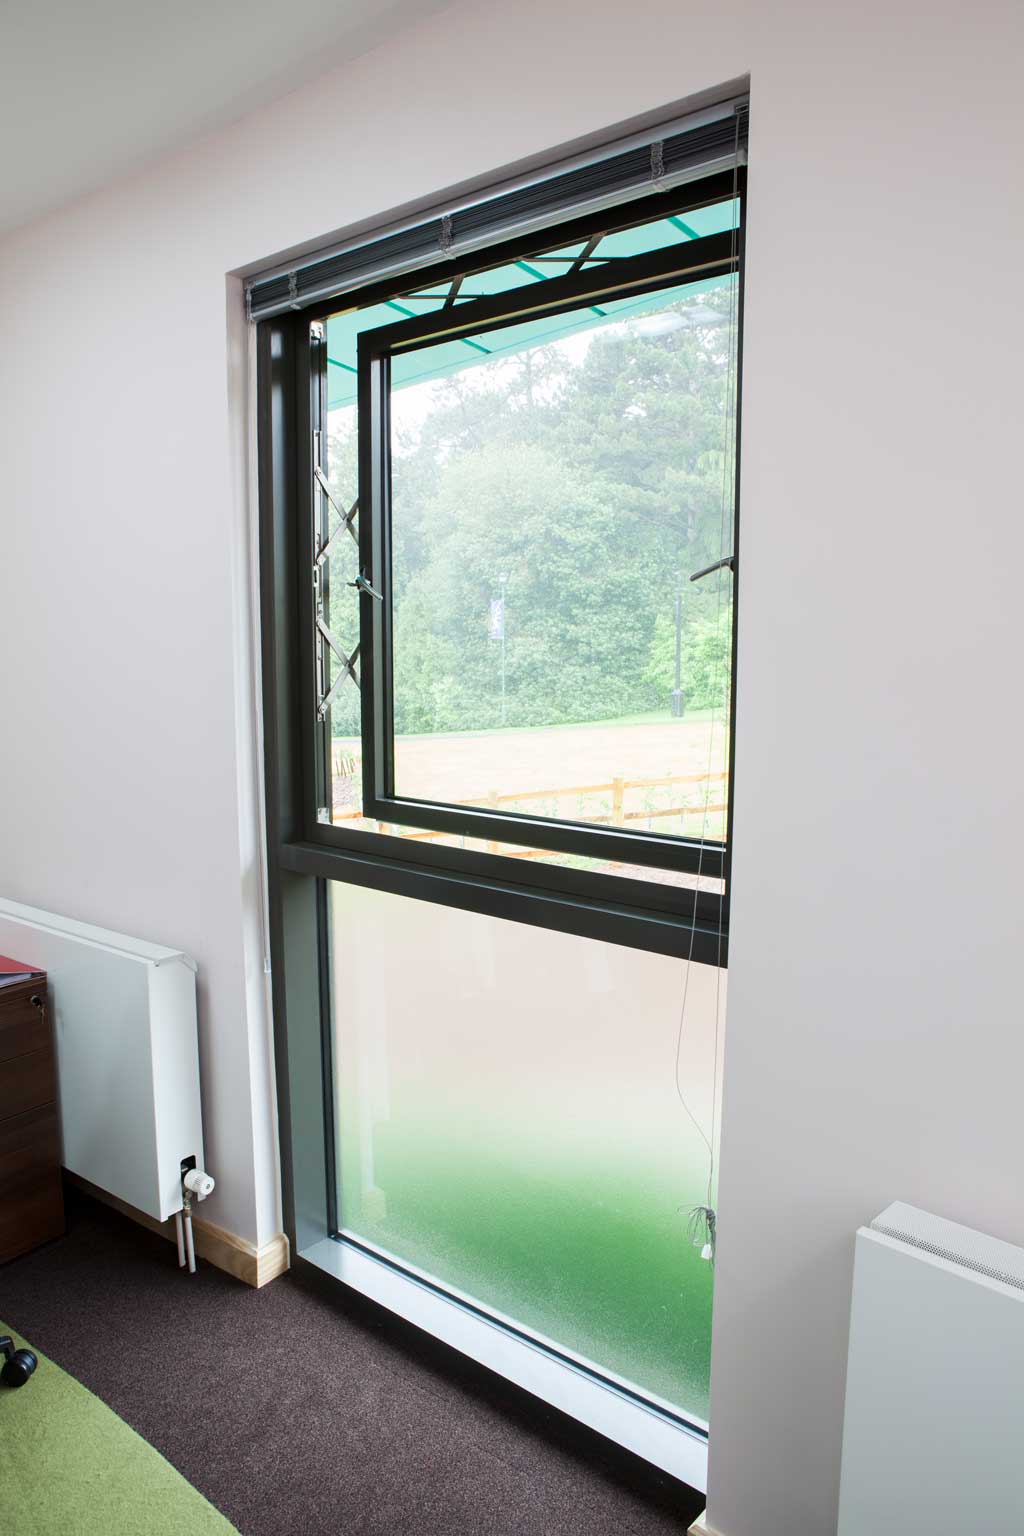 aluminium casement windows for sale aldershot